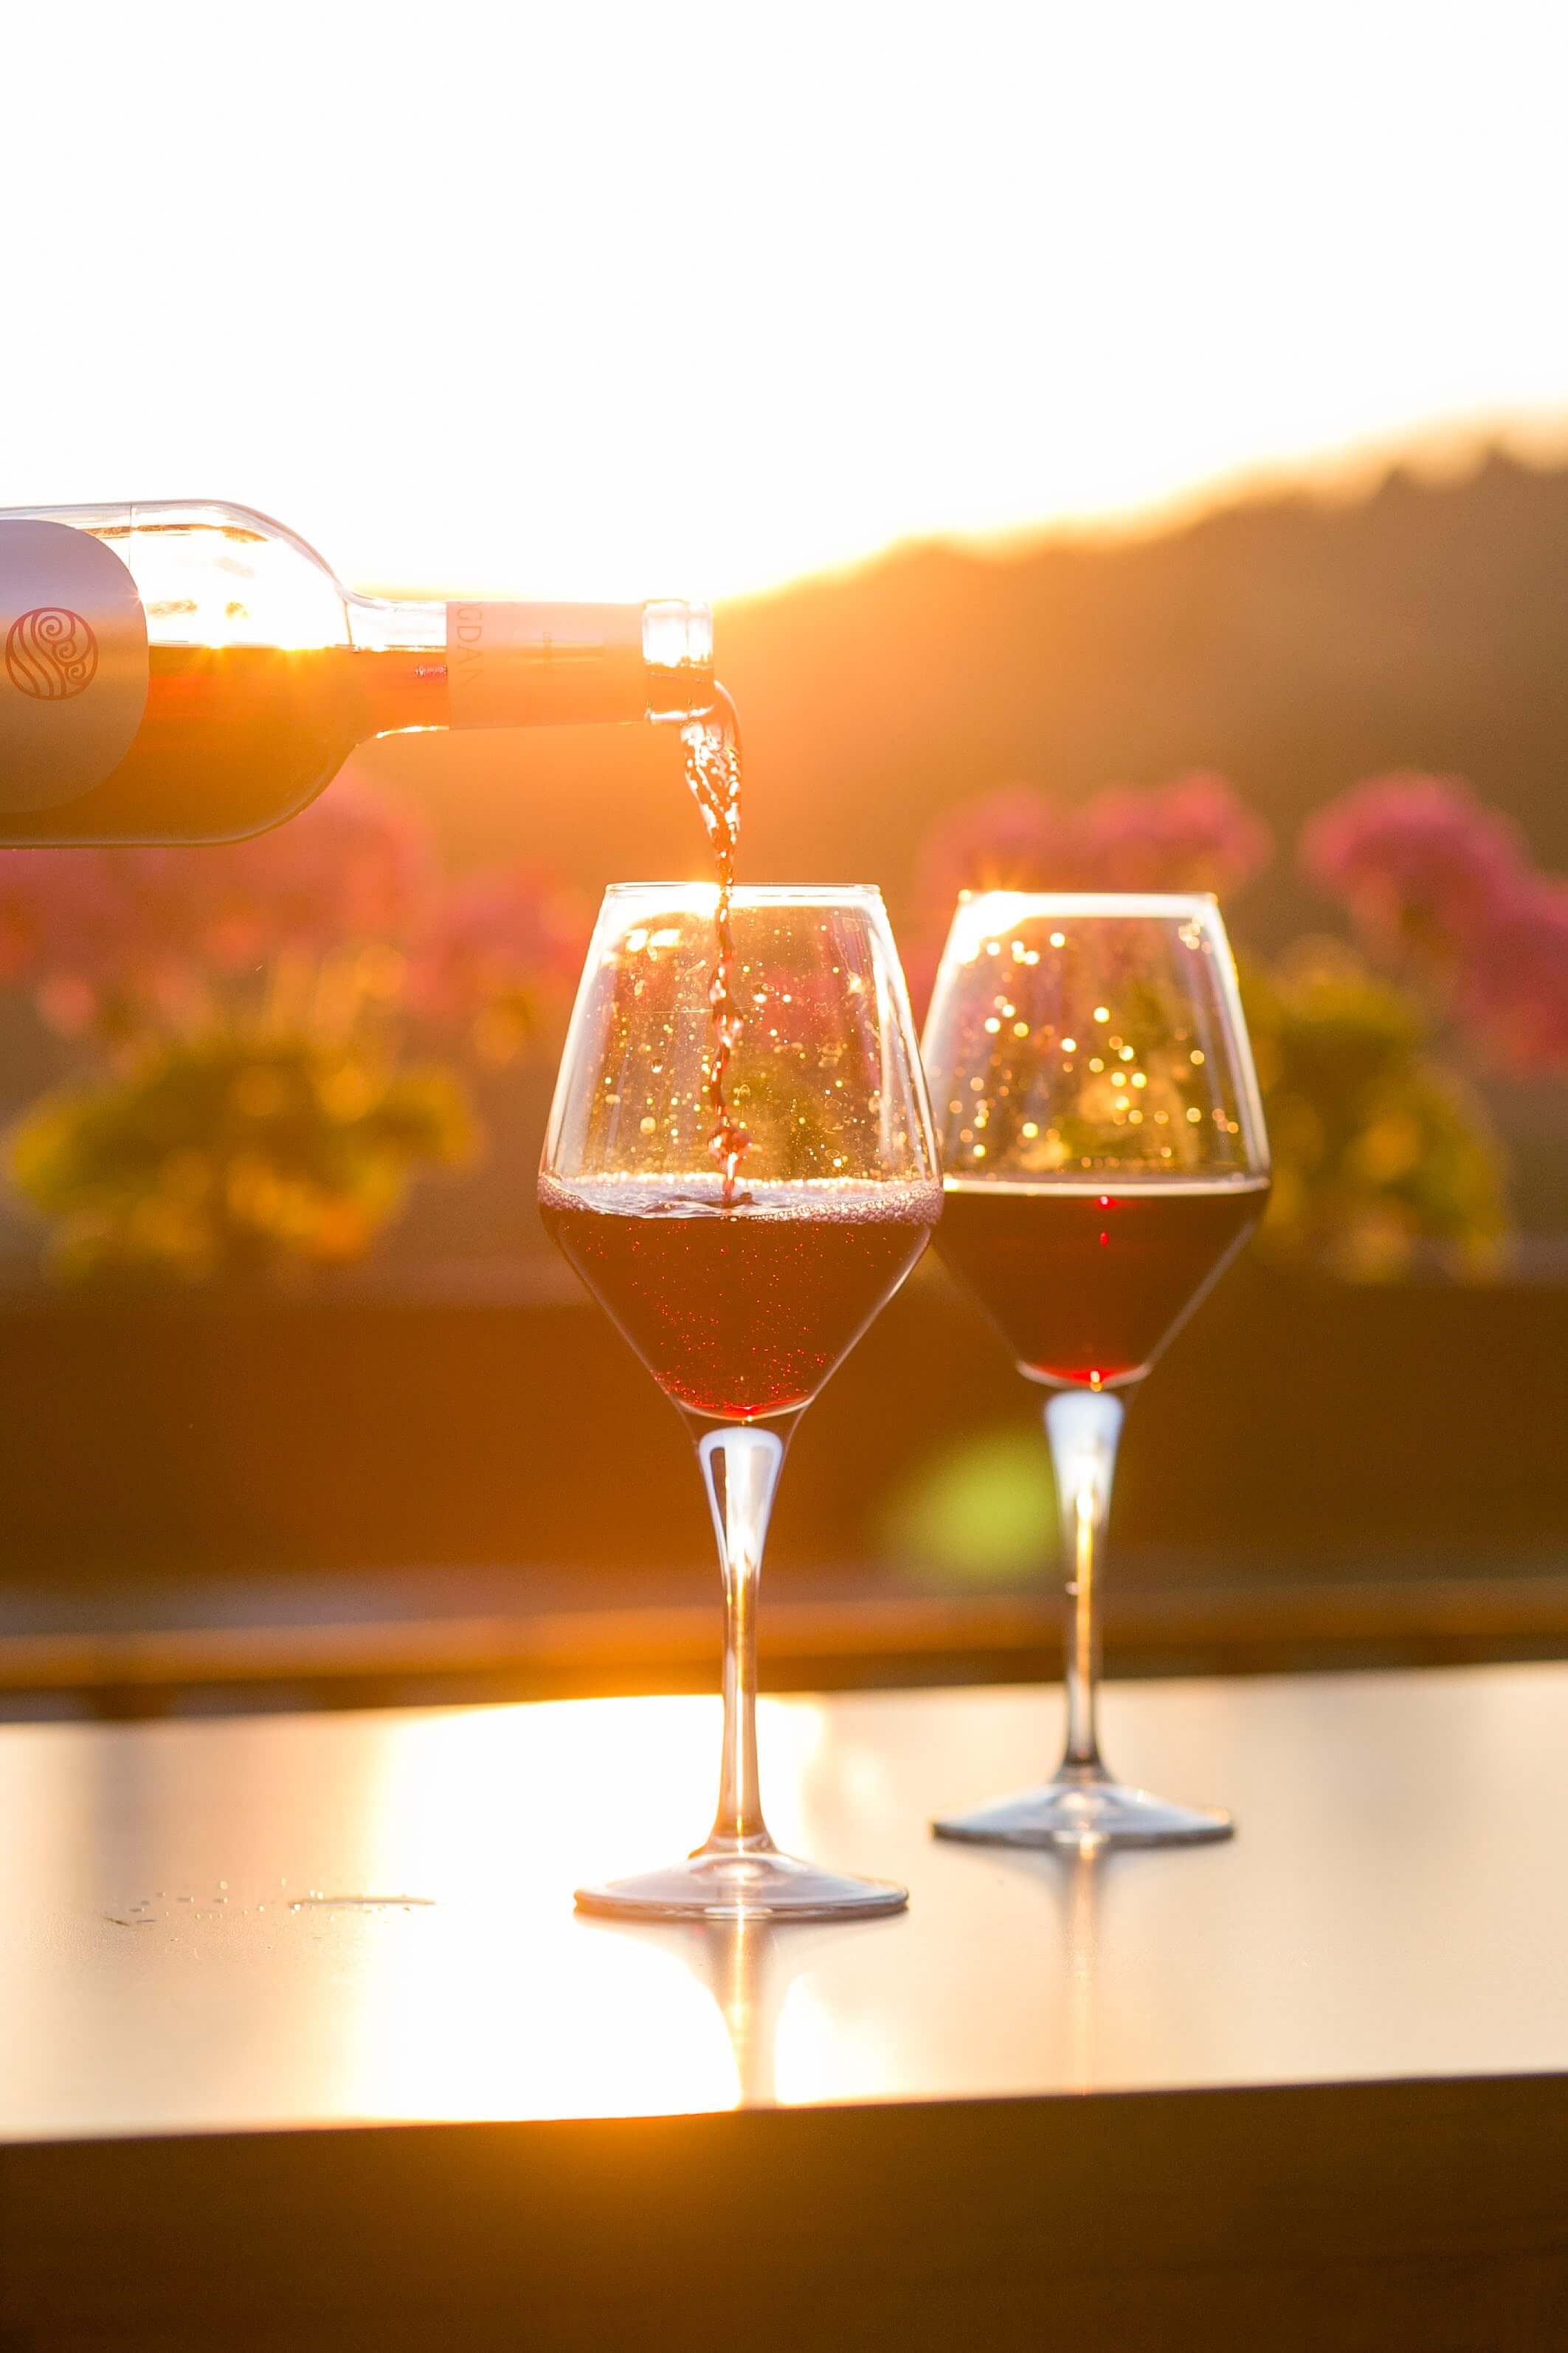 התכונות הבריאותיות של היין